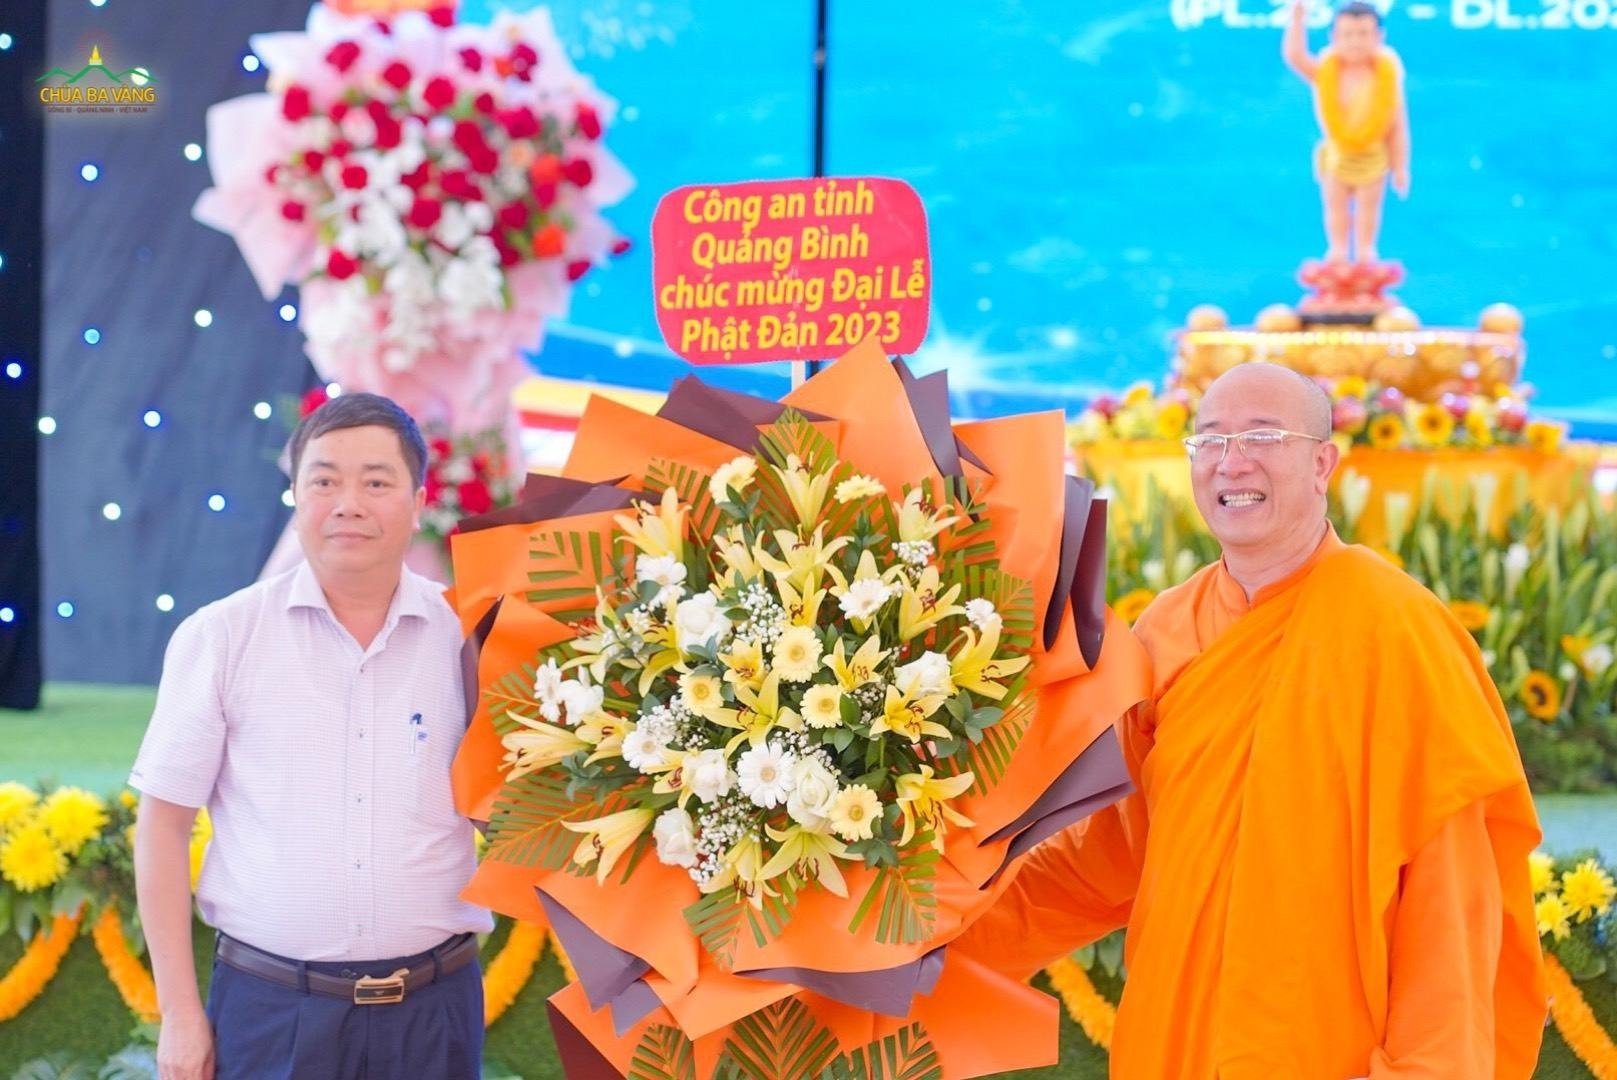 Thượng tá Trần Văn Sáng - Phó trưởng phòng an ninh nội địa Công an tỉnh Quảng Bình tặng hoa chúc mừng Đại lễ